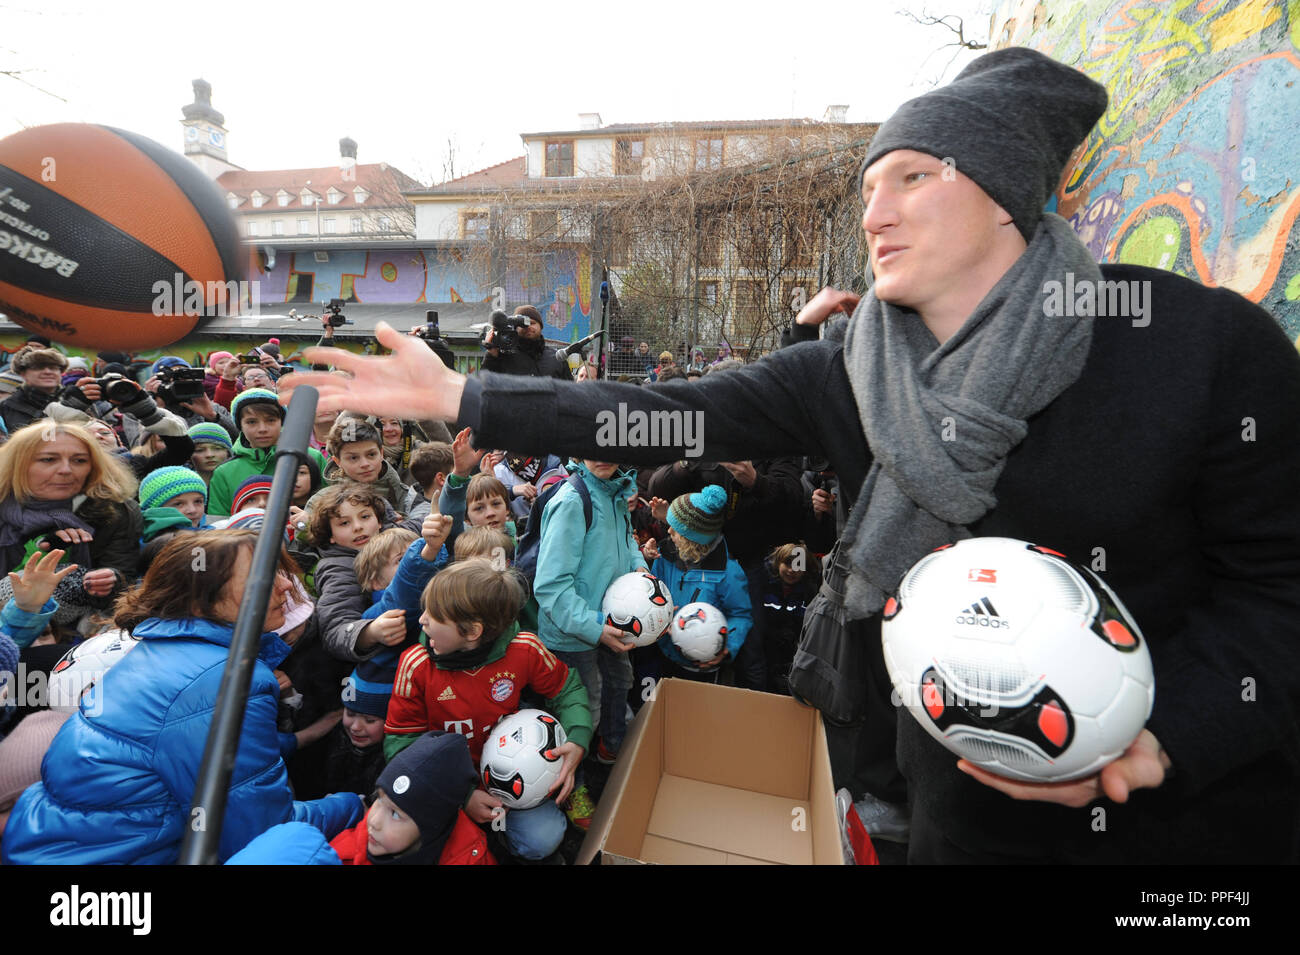 Bastian Schweinsteiger, joueur de football au FC Bayern Munich, distribue 100 boules pour les enfants lors d'une manifestation pour la sauvegarde de la terrain de sport au centre communautaire dans Glockenbachwerkstatt la Blumenstrasse. Banque D'Images